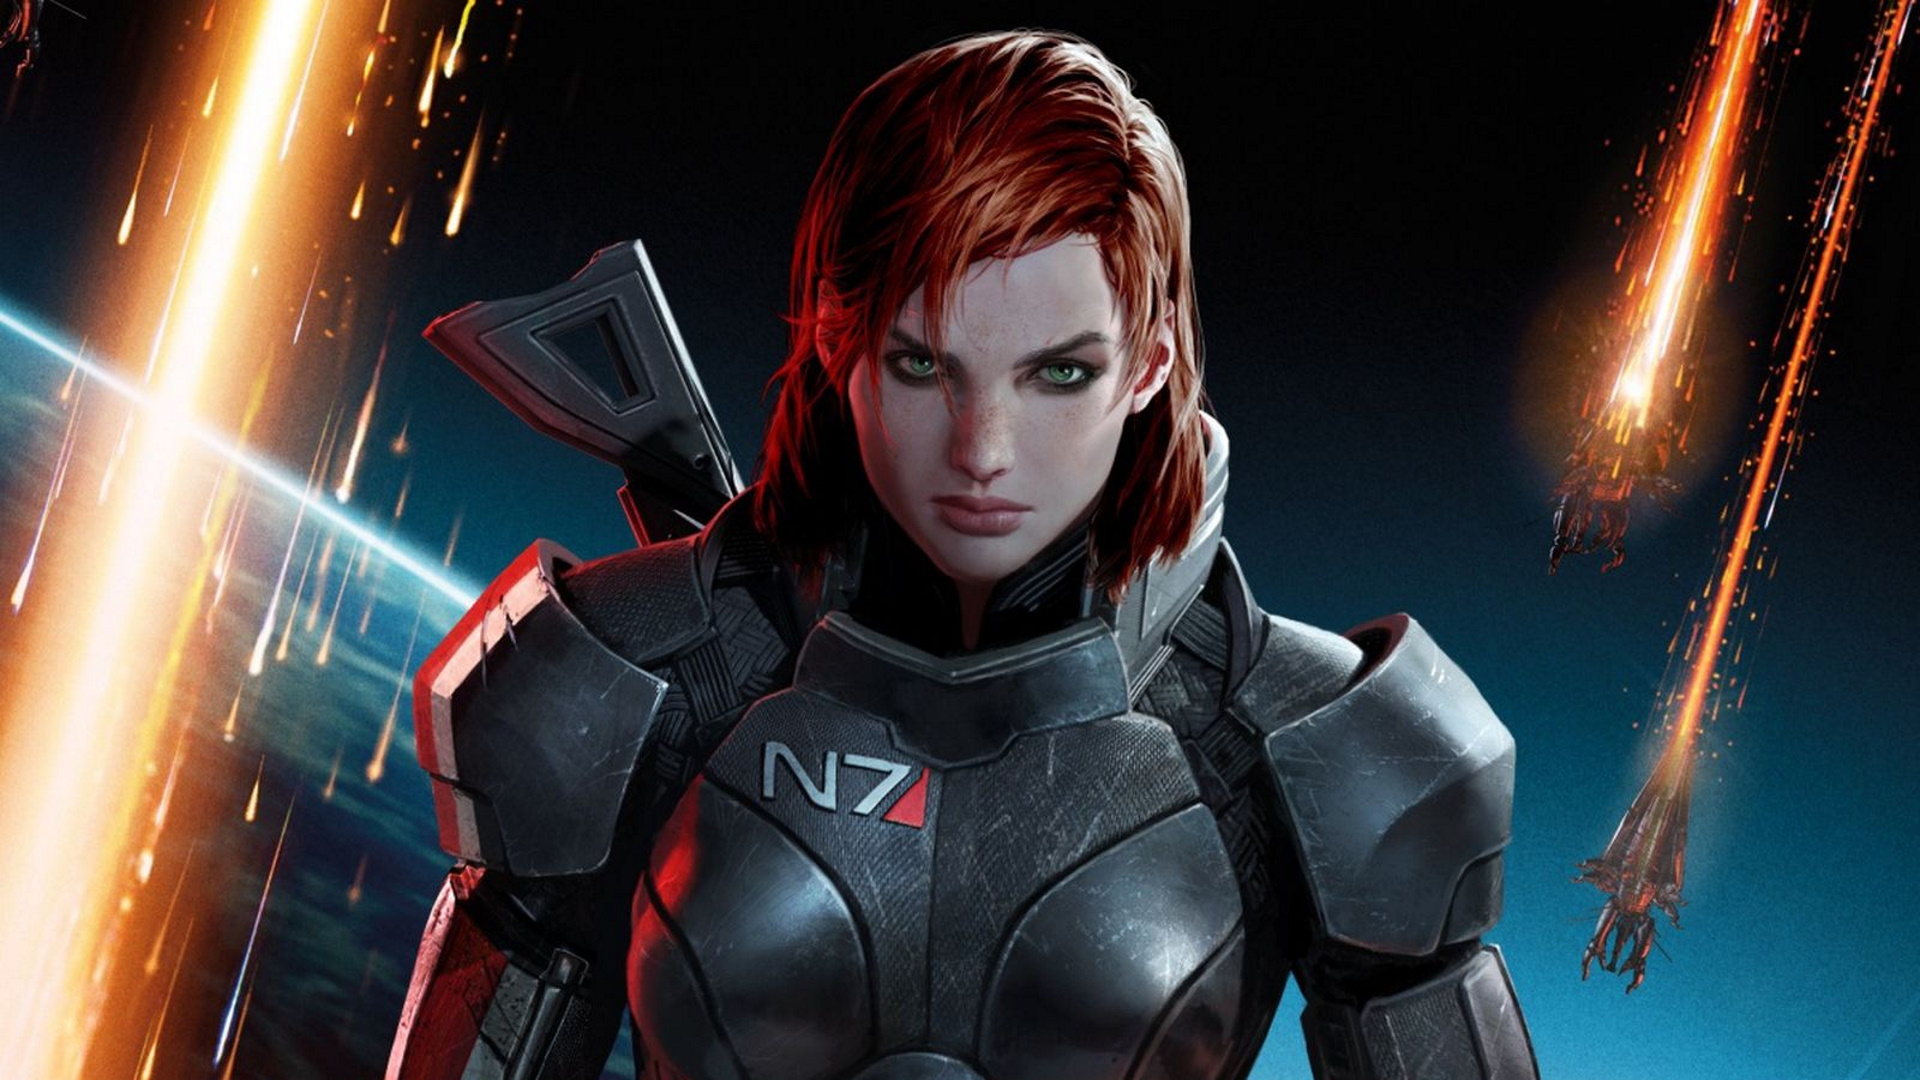 Deus Ex writer working on Mass Effect 5, Bioware confirms